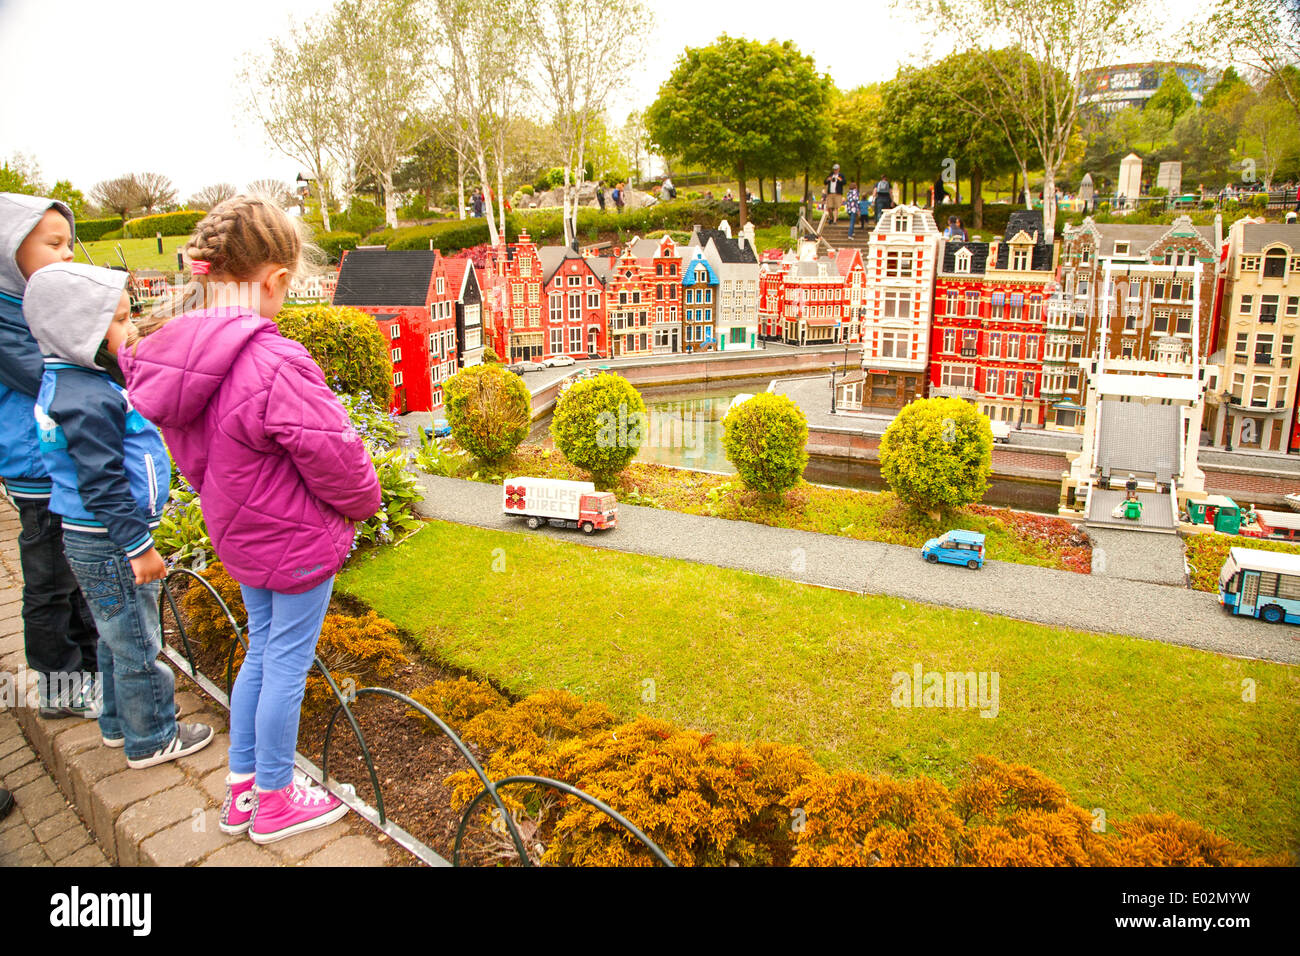 Reino Unido, Windsor, Legoland, un parque de ocio familiar, hijitos, admirando la pantalla lego. Foto de stock